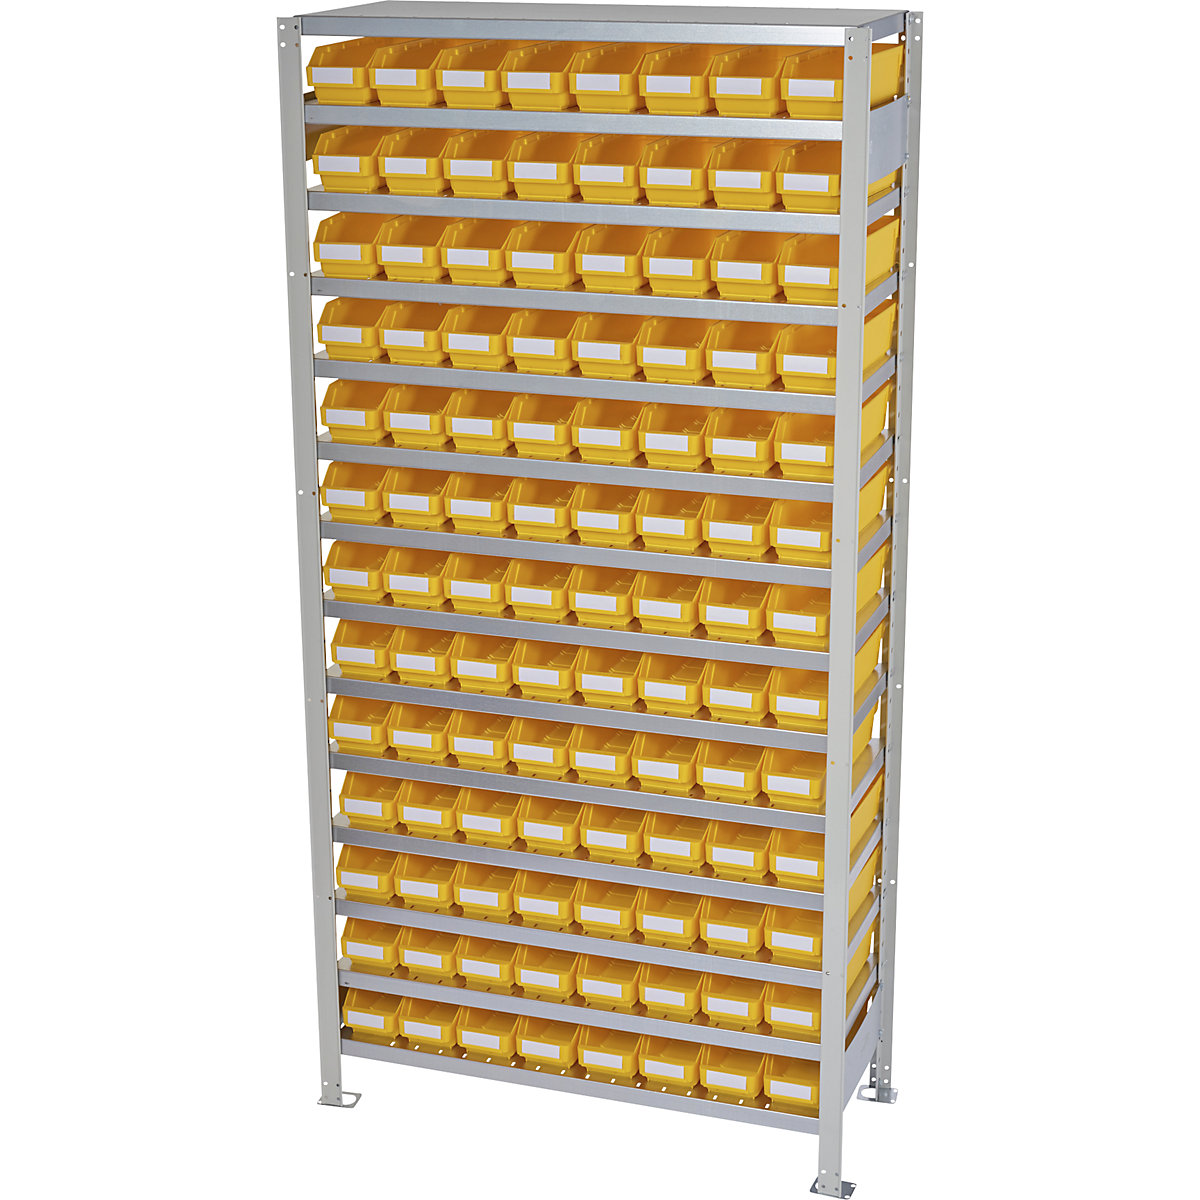 Összedugaszolós állvány dobozokkal – STEMO, állványmagasság 2100 mm, alapállvány, 400 mm mély, 104 sárga doboz-33